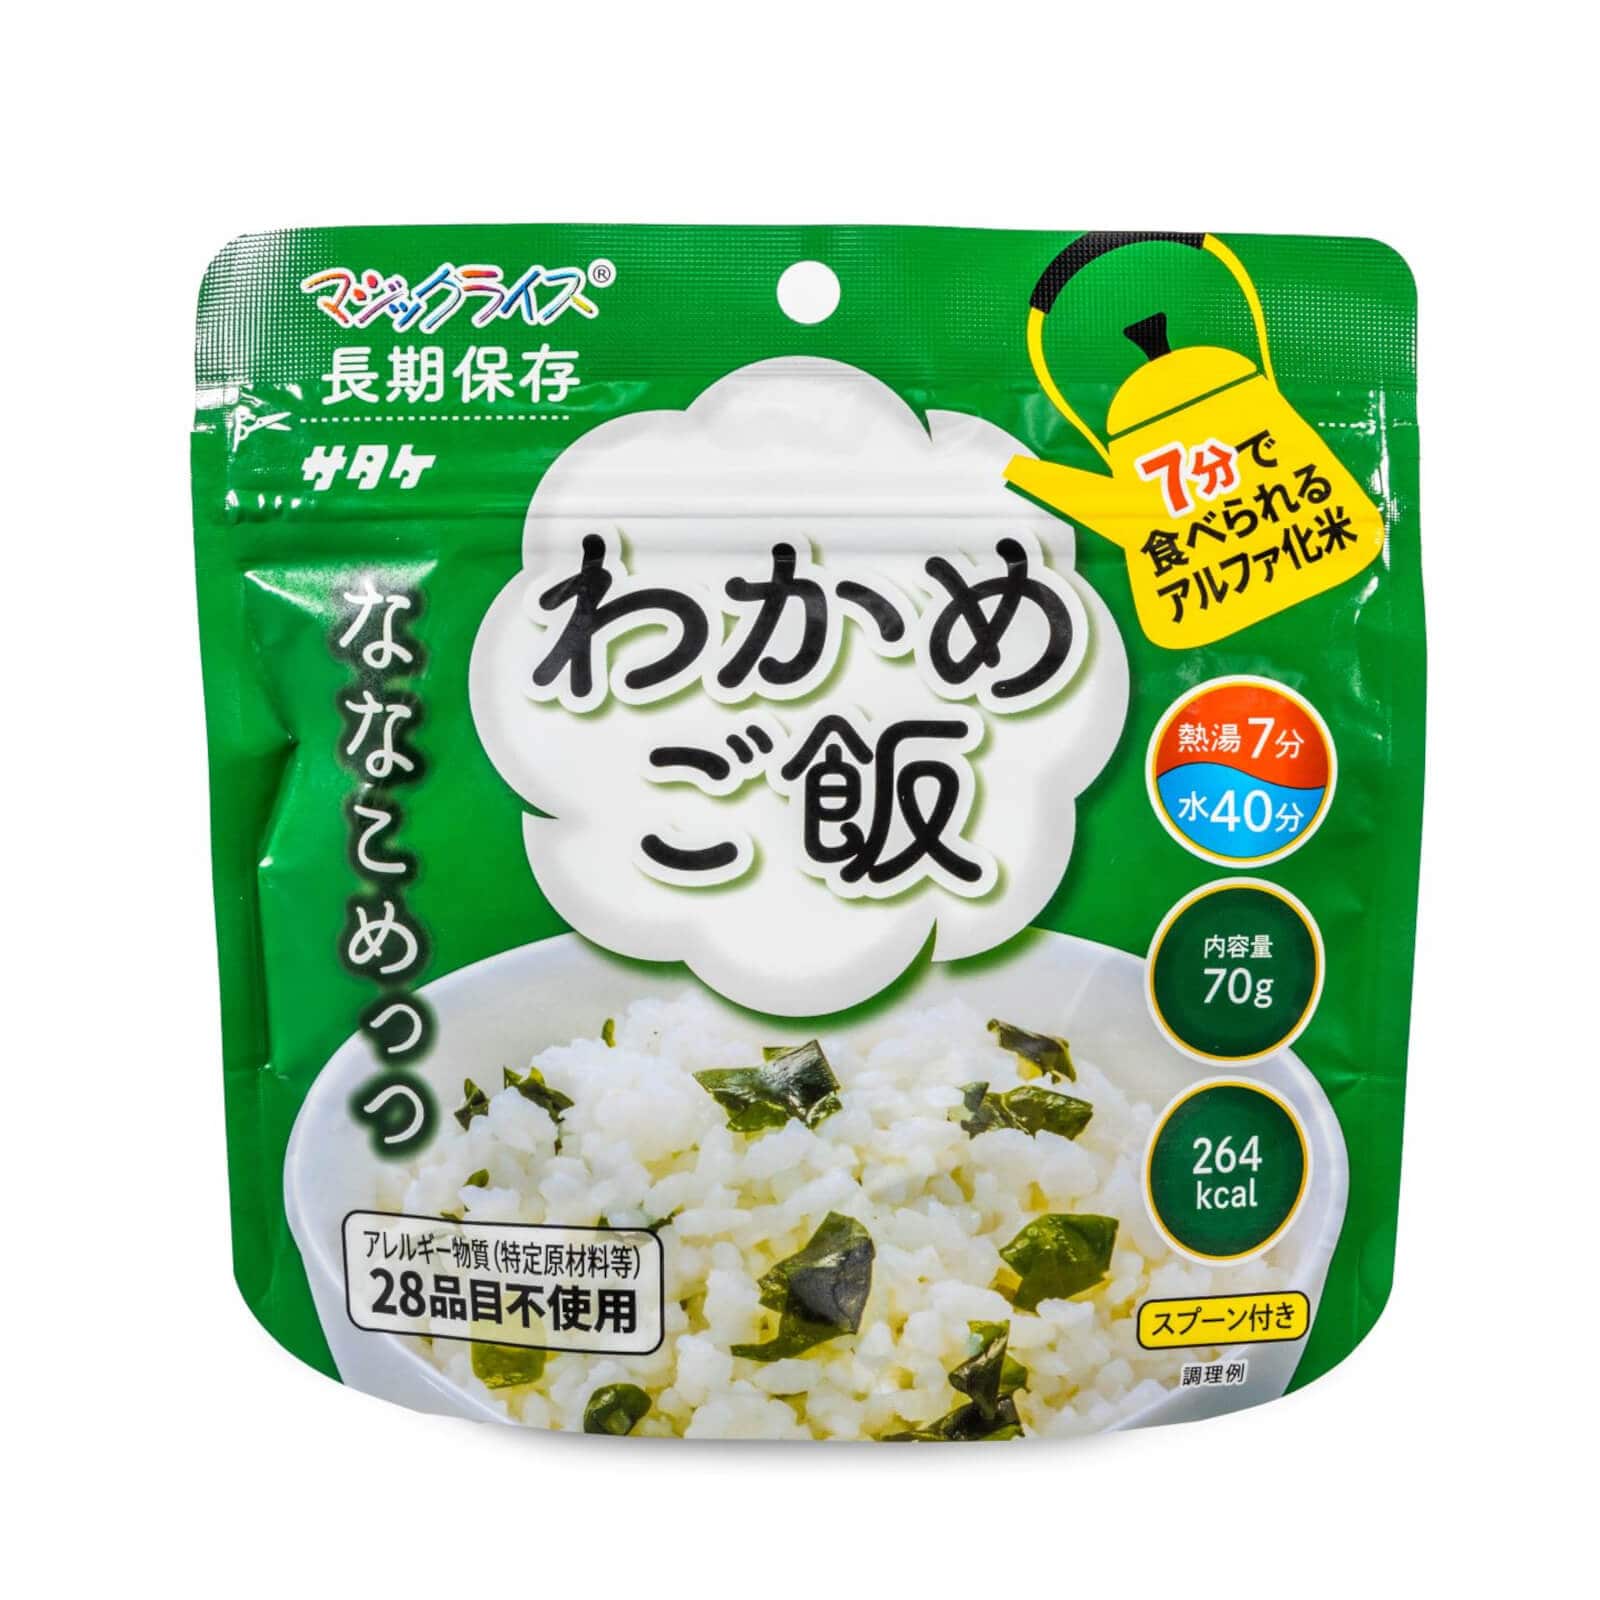 サタケ マジックライスななこめっつ 18食セット | 朝日新聞モール